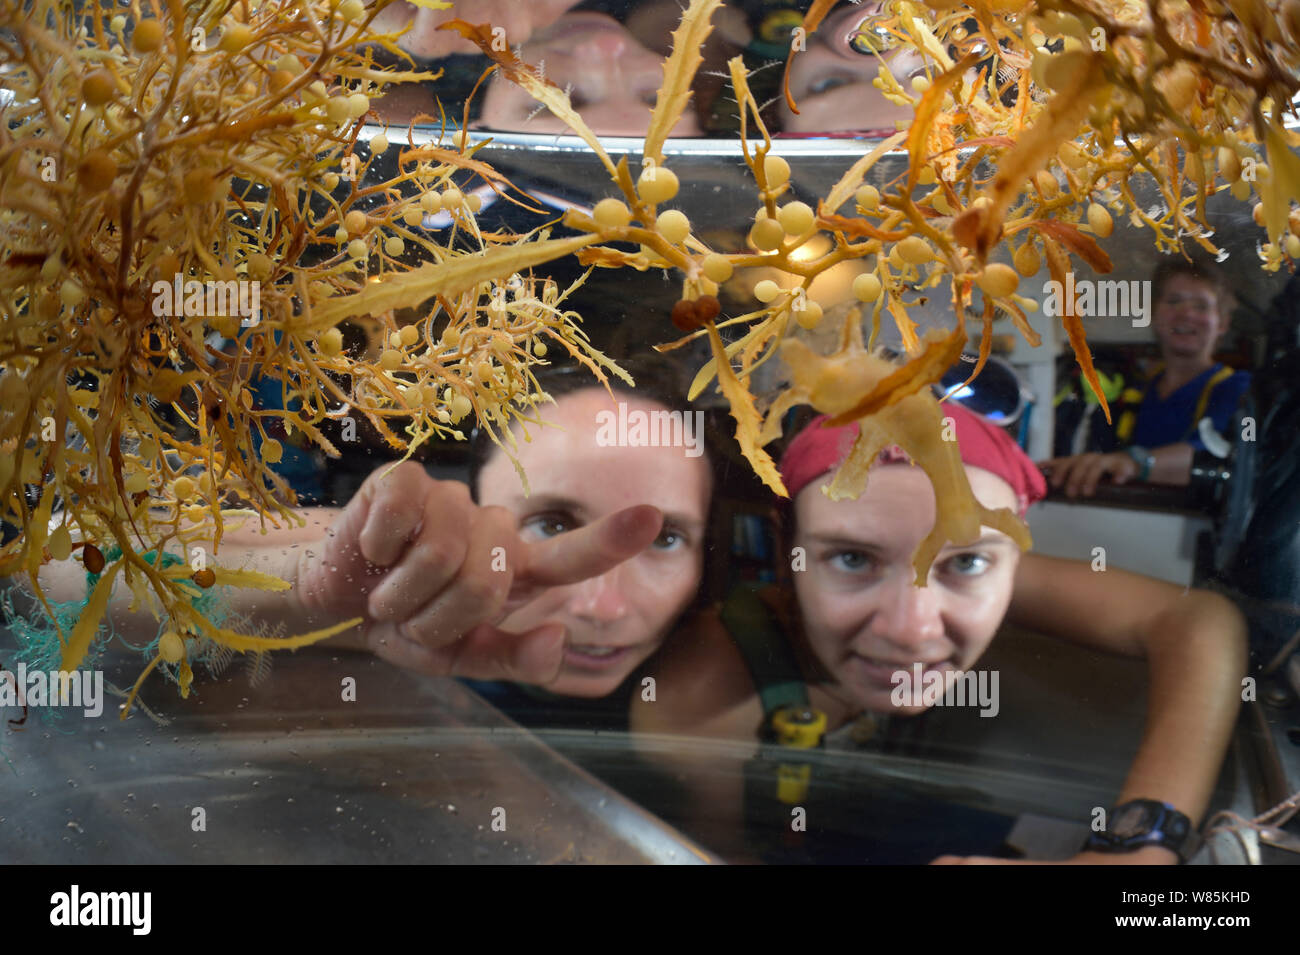 Los científicos mirando Sargassum algas, con maleza sargasso común a la izquierda (Sargassum natans) y diente amplio golfo weed (Sargassum fluitans) Mar de los Sargazos, Bermudas Foto de stock